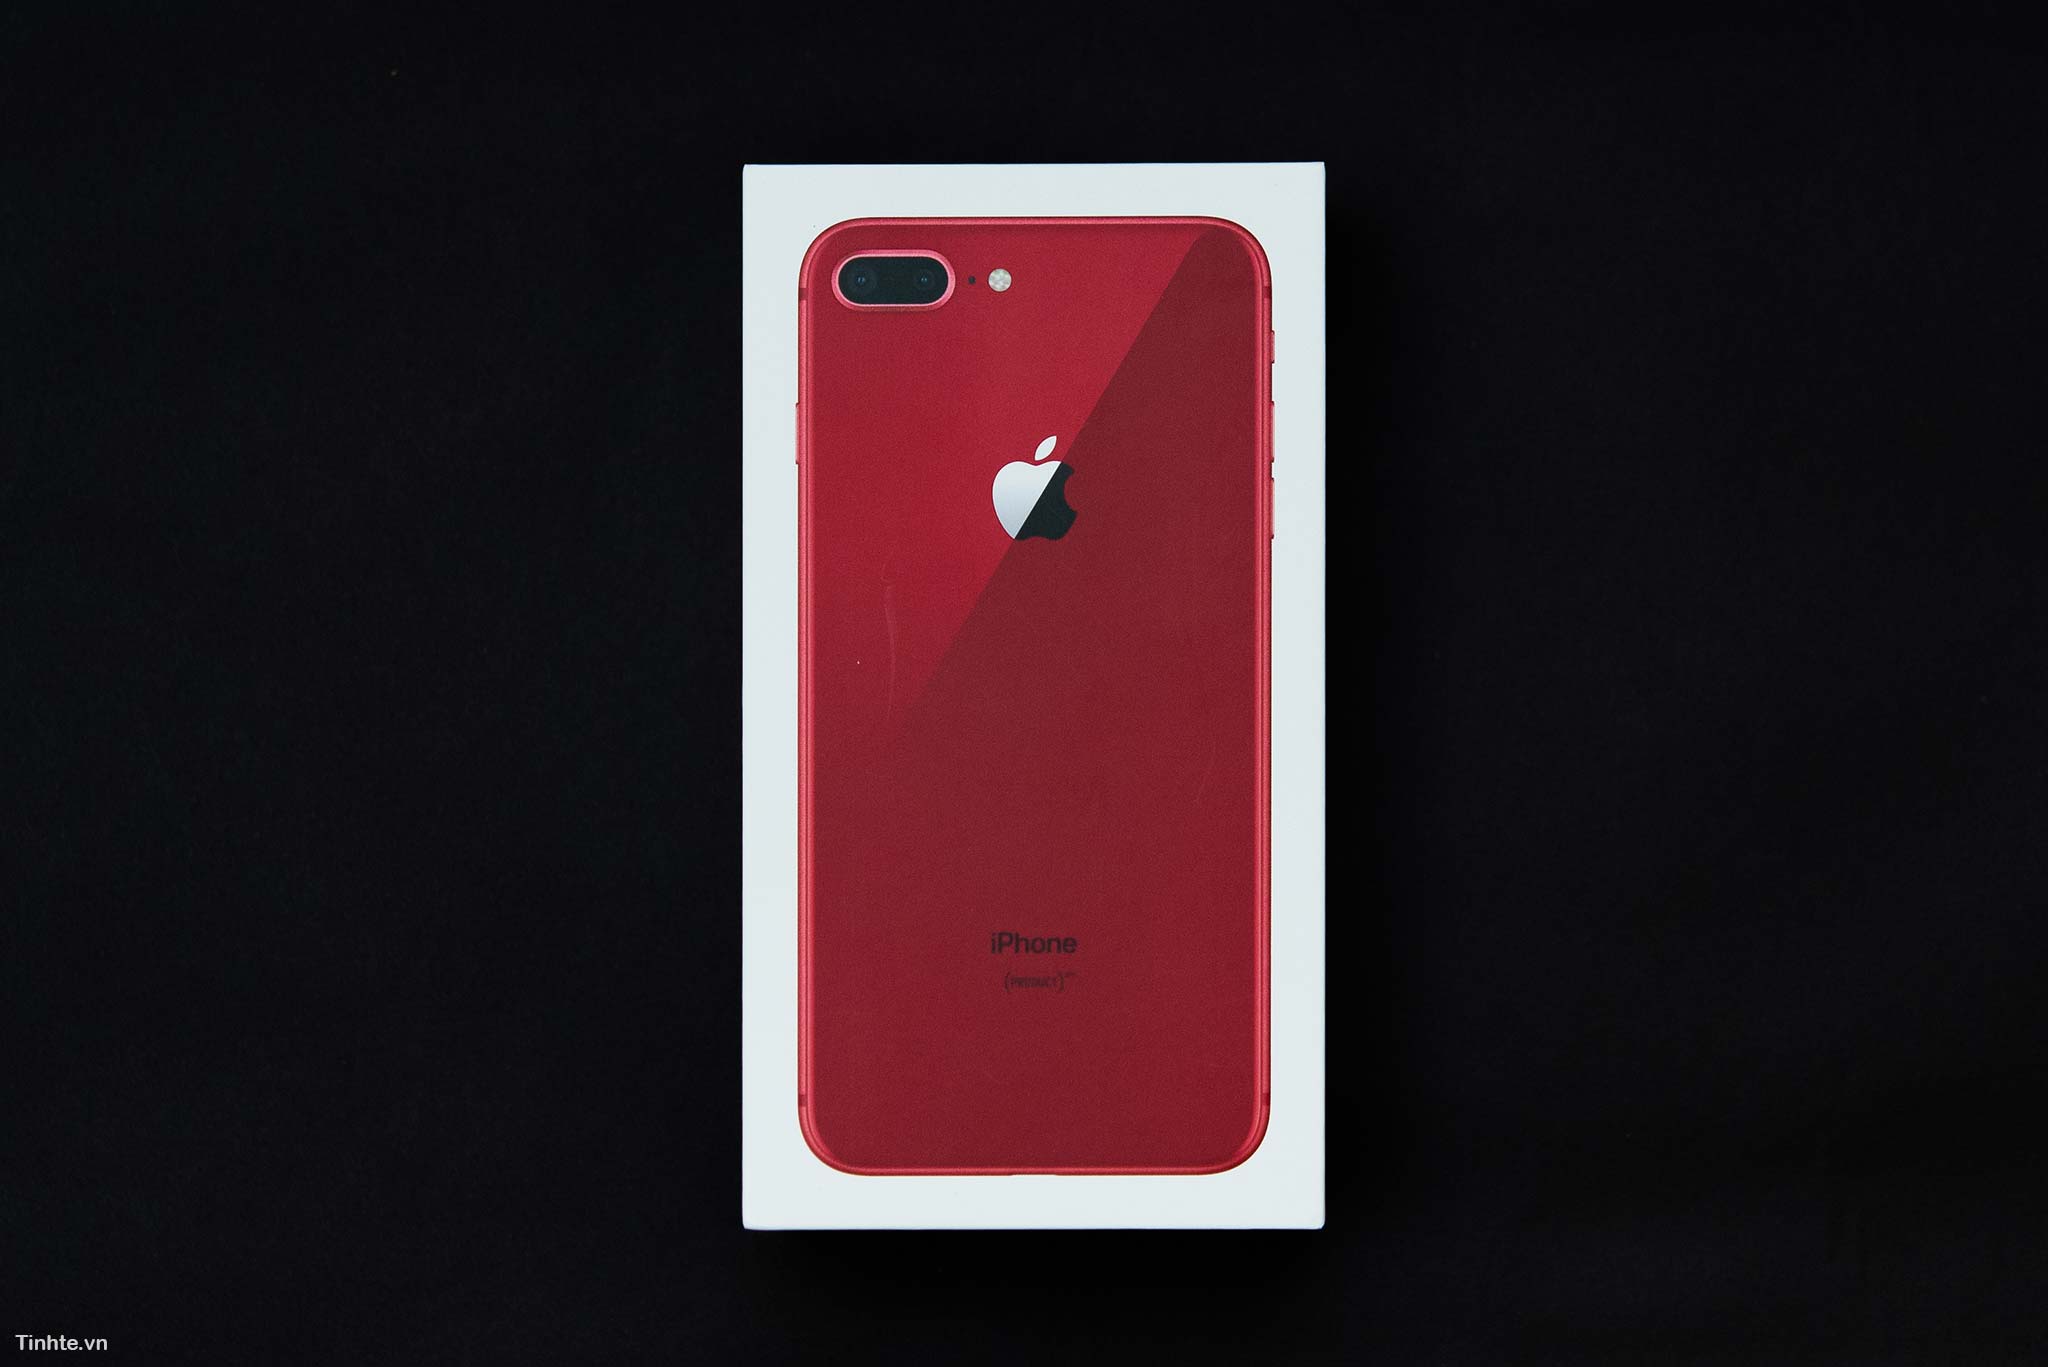 Đang tải tinhte_tren_tay_apple_iphone_8_product_red_1.jpg…